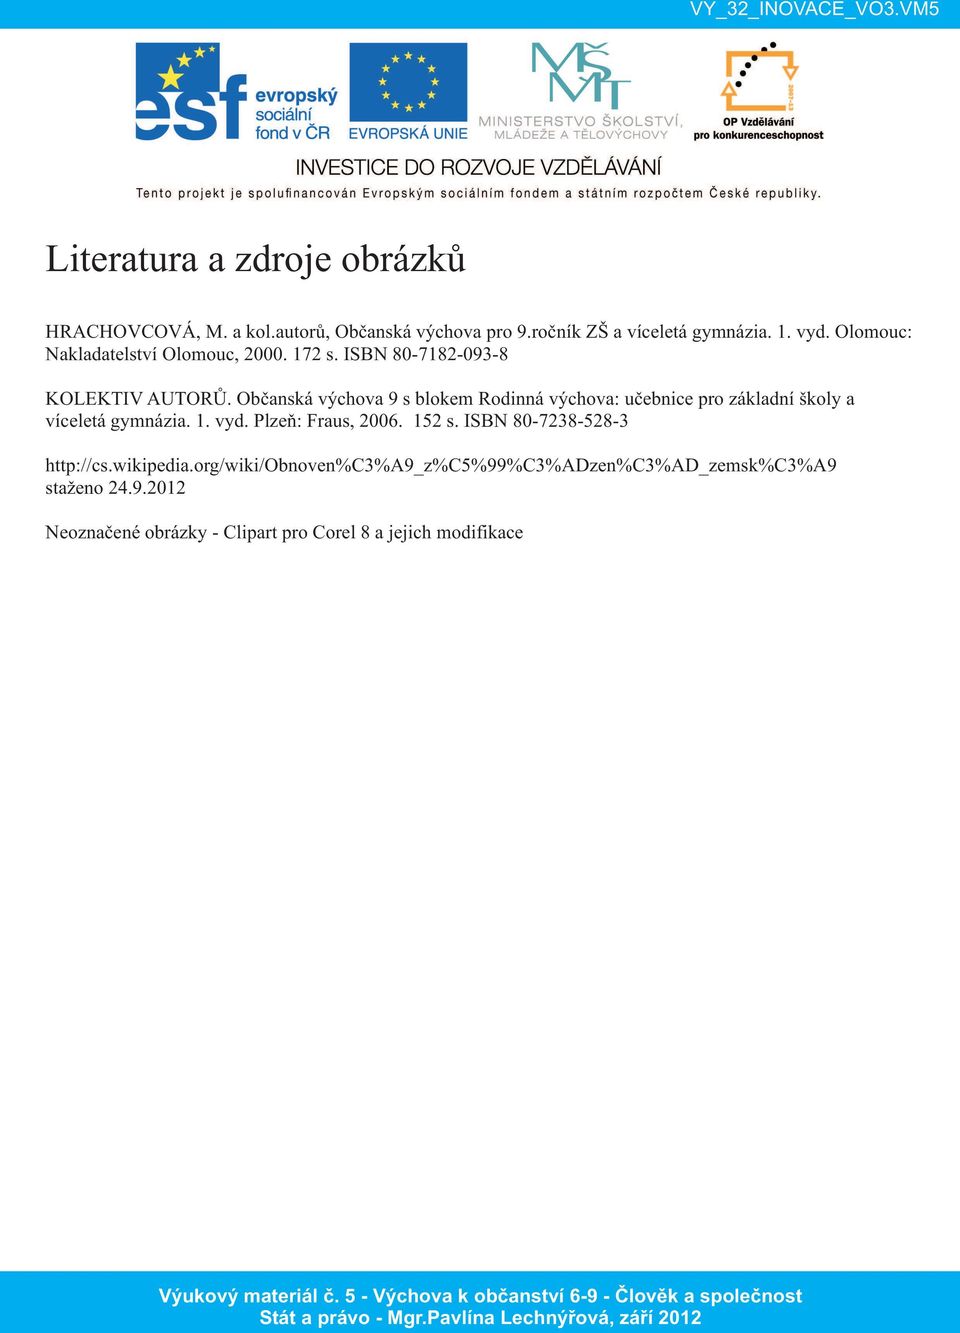 Občanská výchova 9 s blokem Rodinná výchova: učebnice pro základní školy a víceletá gymnázia. 1. vyd. Plzeň: Fraus, 2006.